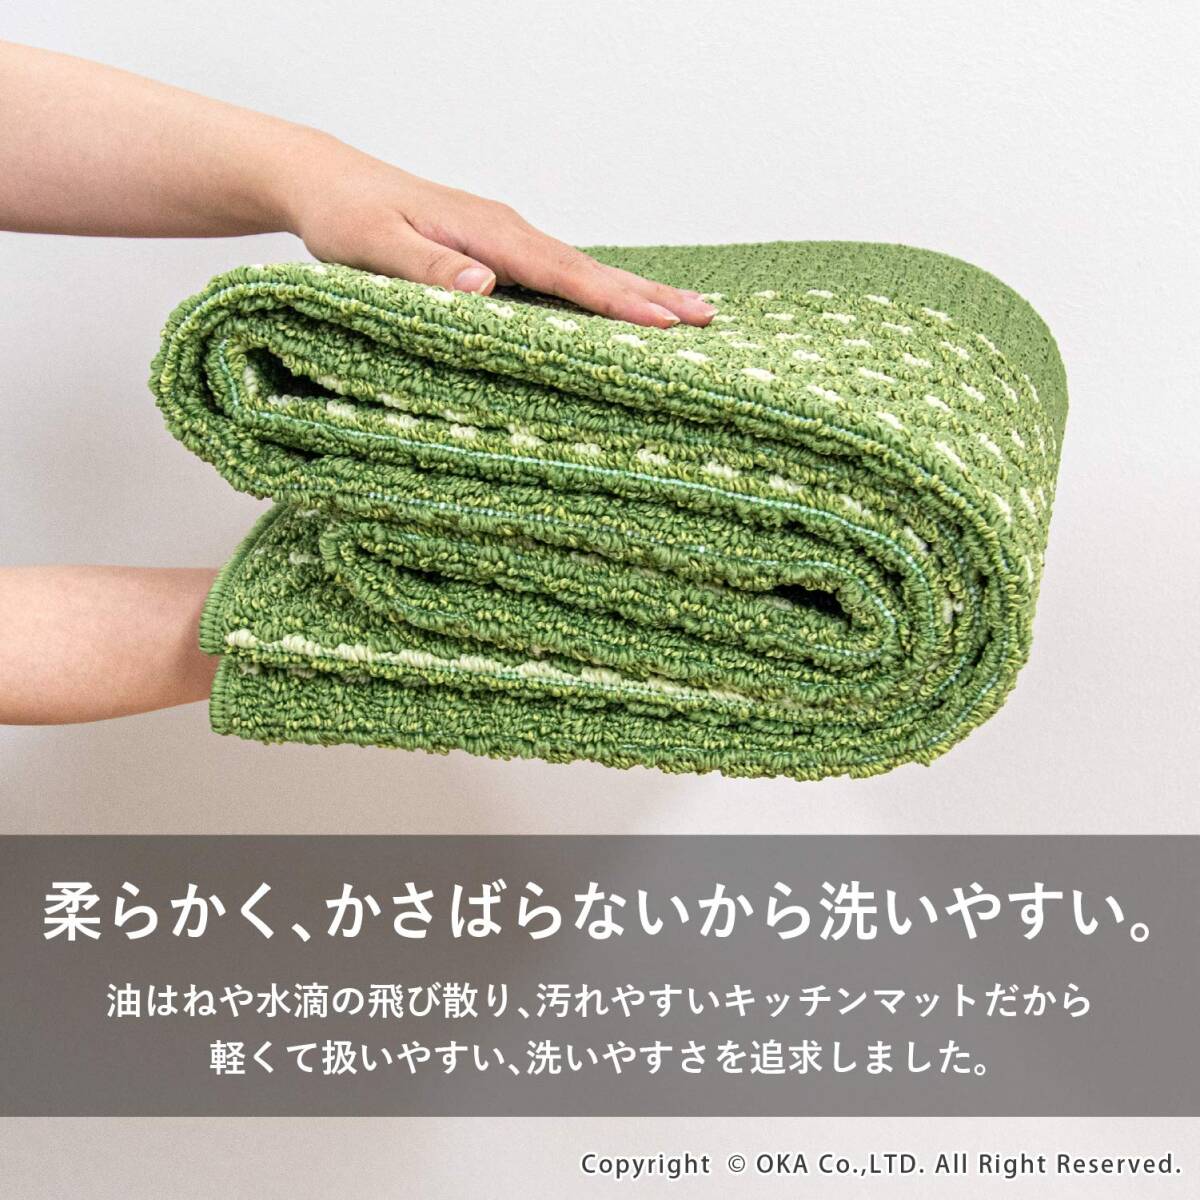 オカ(OKA) 優踏生 洗いやすいキッチンマットヘリンボン 約45cm×252cm グリーン (すべらない 日本製 北欧)_画像3